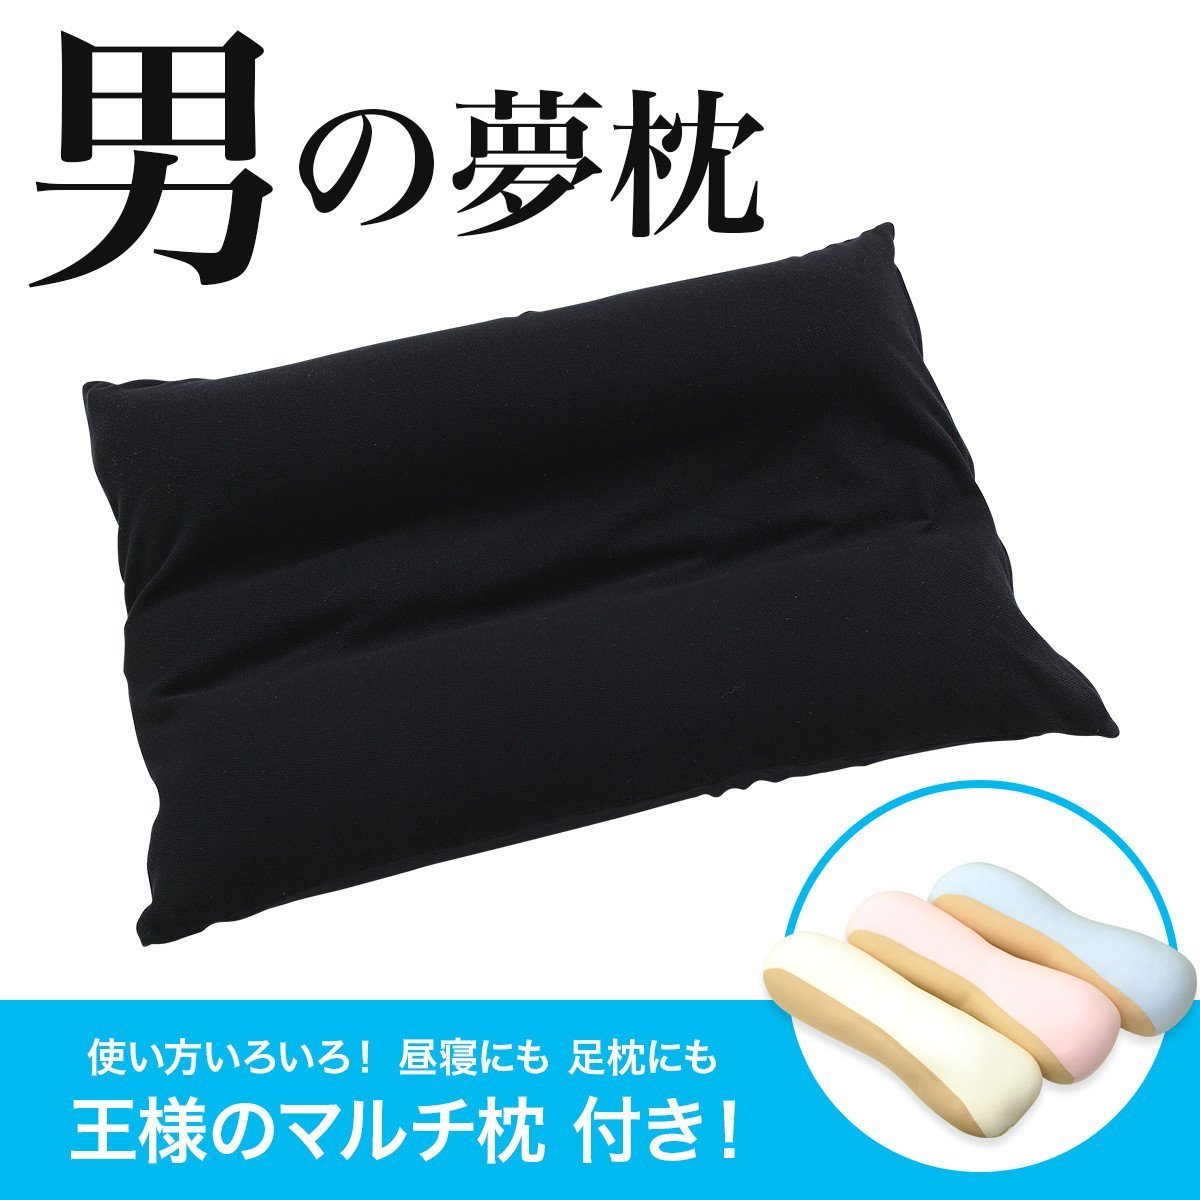 日本代购王样男款护颈椎枕备长炭抗菌保健舒适透气缓解疲劳 包邮